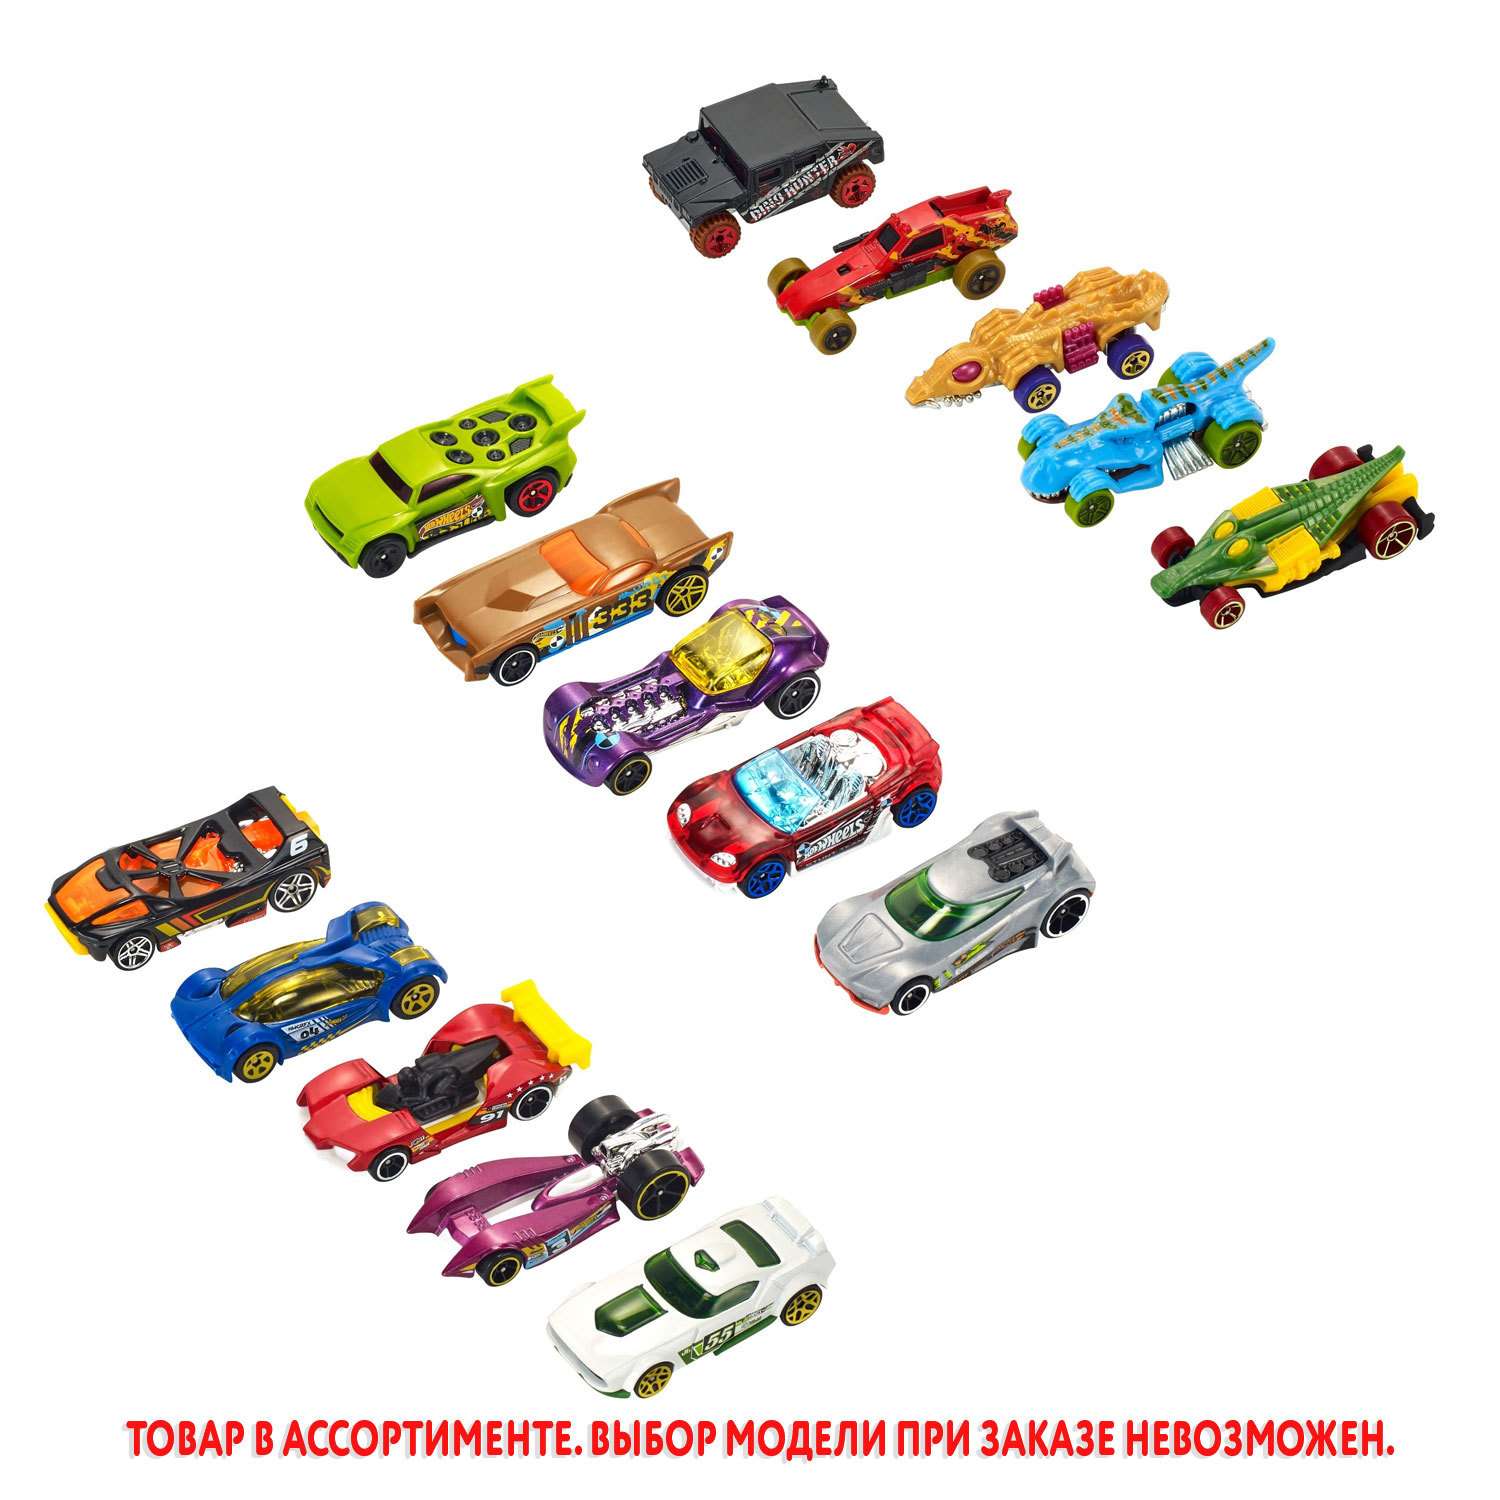 Магазин Кораблик – плюшевые и интерактивные игрушки, детские товары, конструкторы, гаджеты.